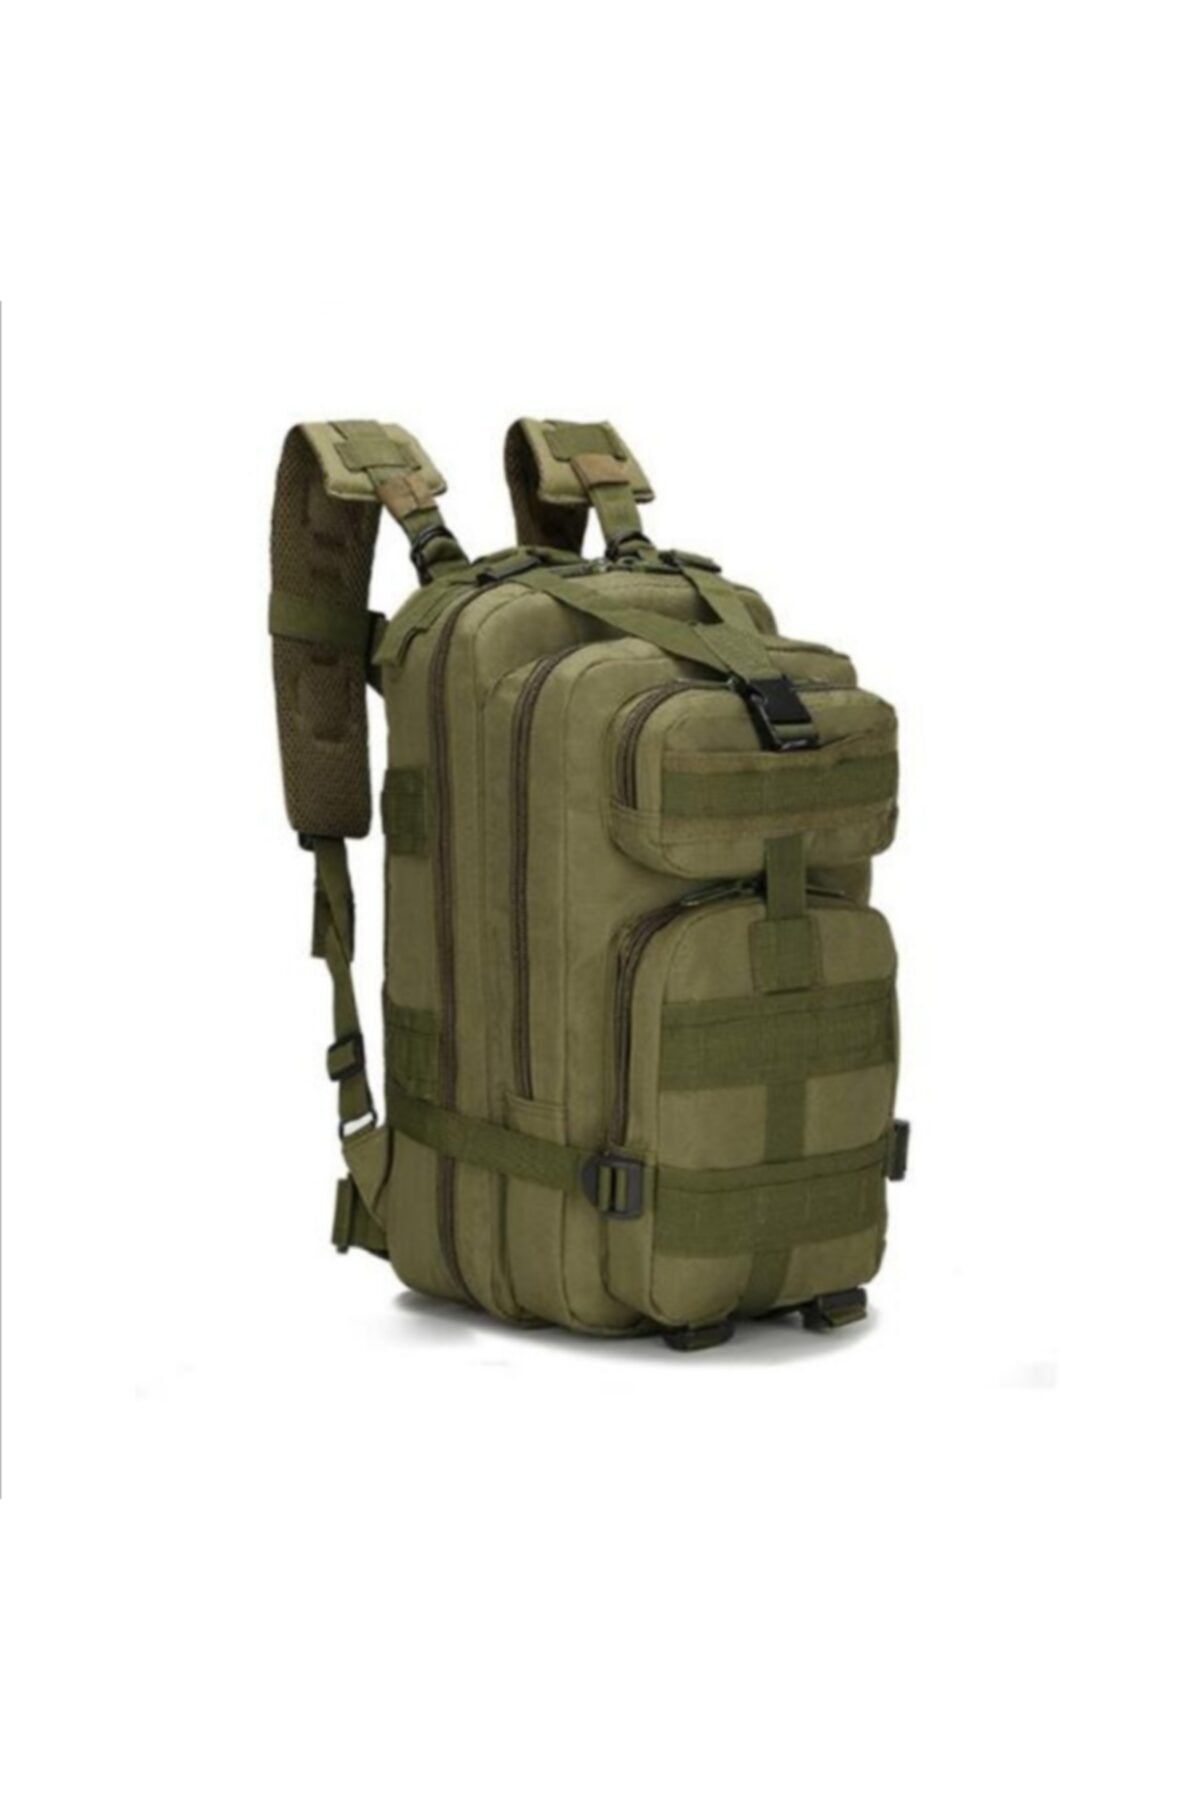 Silyon Askeri Giyim 45 Litre Haki Renk Tactical Çanta Su Geçirmez